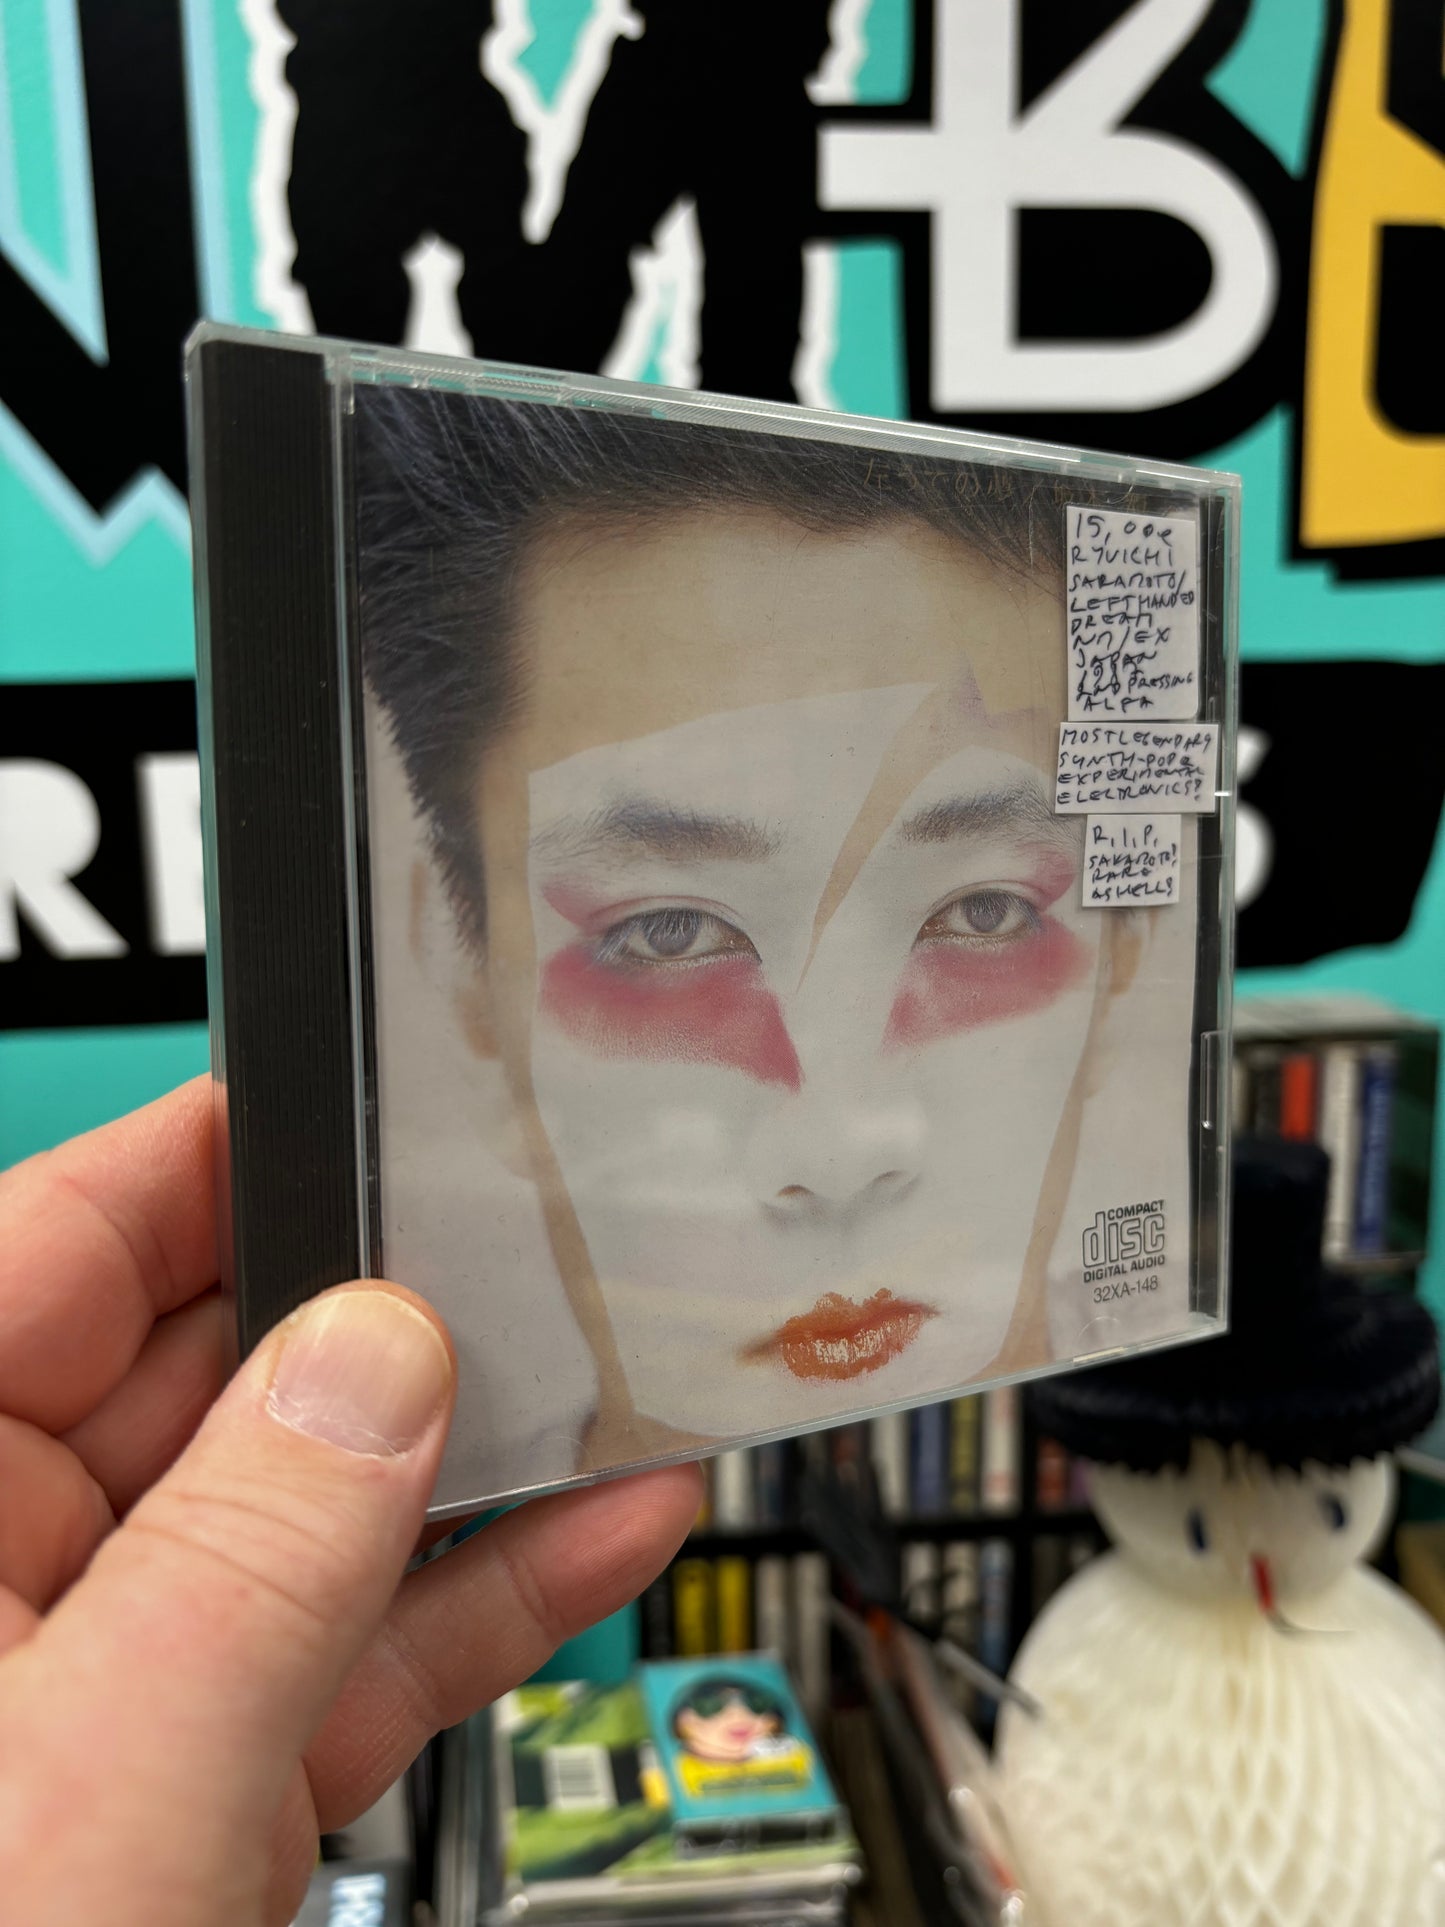 Ryuichi Sakamoto: Left Handed Dream, CD, Japan 1987